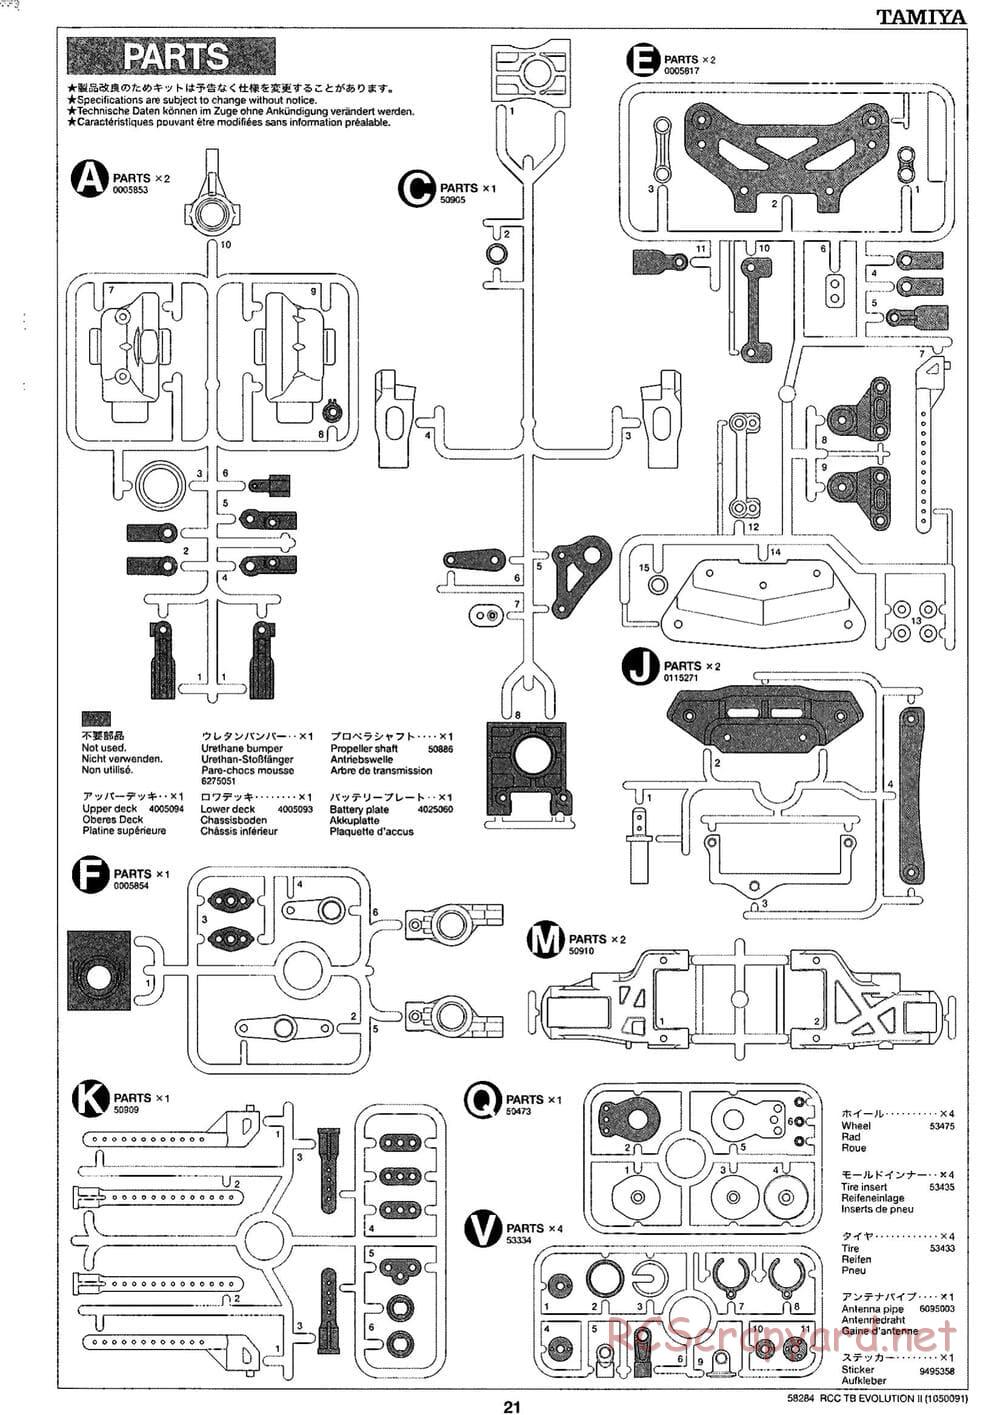 Tamiya - TB Evolution II Chassis - Manual - Page 21